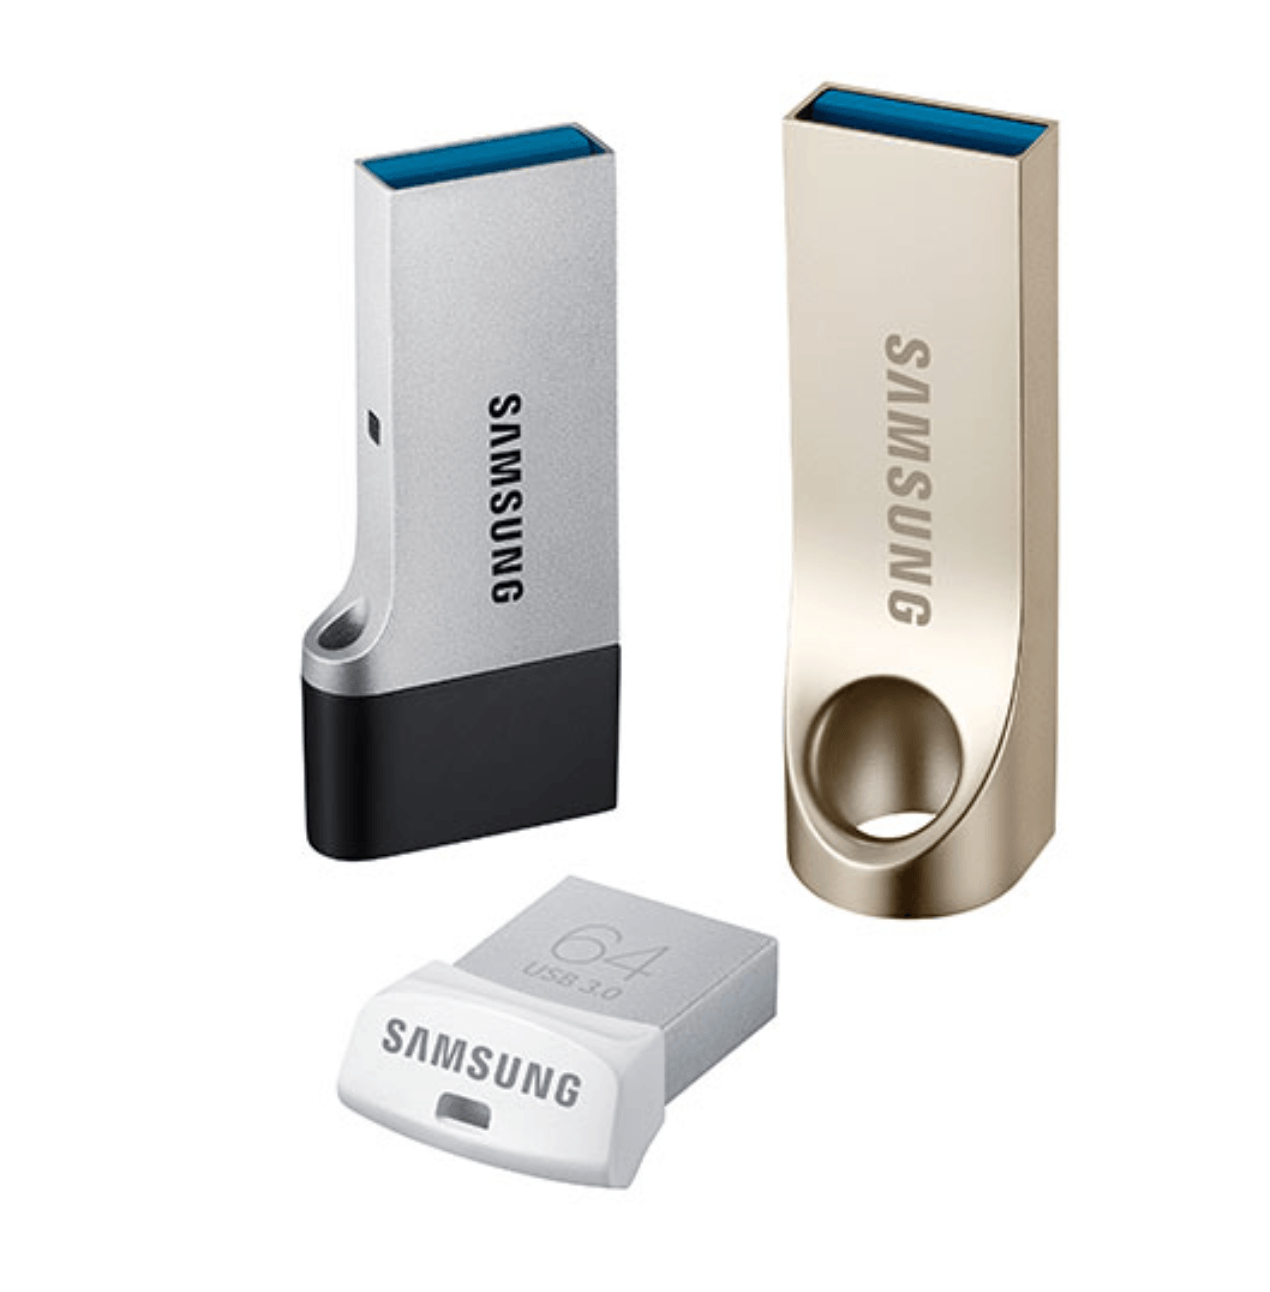 Trio de nuevos USB Flash Drives de Samsung